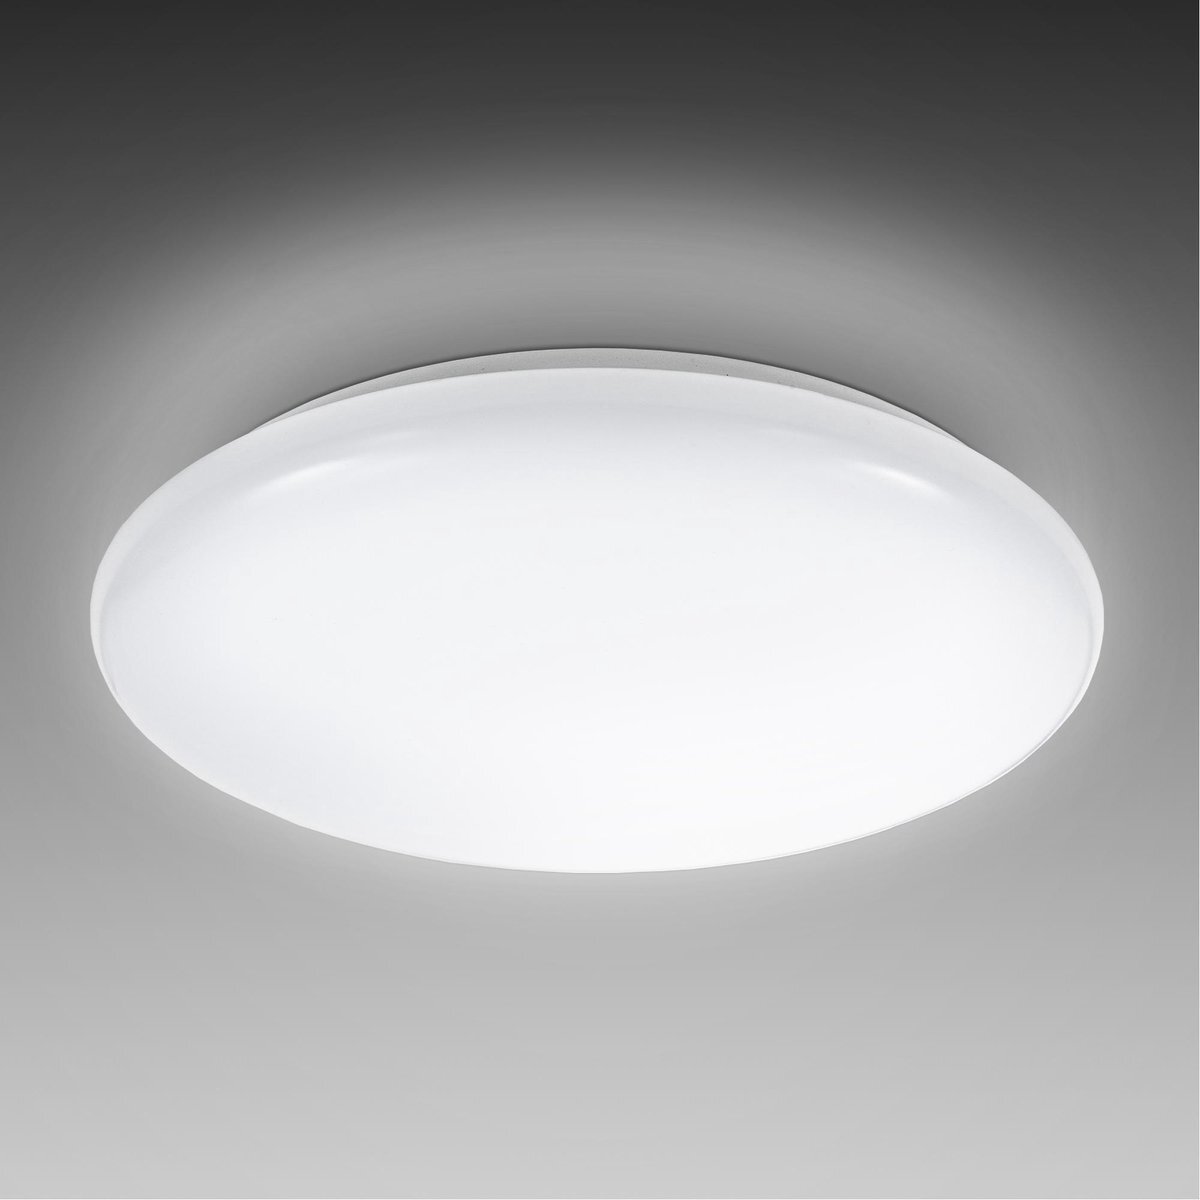 B.K.Licht - Witte LED Plafondlamp - ronde - Ø27.8cm - keuken lamp - voor binnen - 4.000K - 1.200Lm - 12W